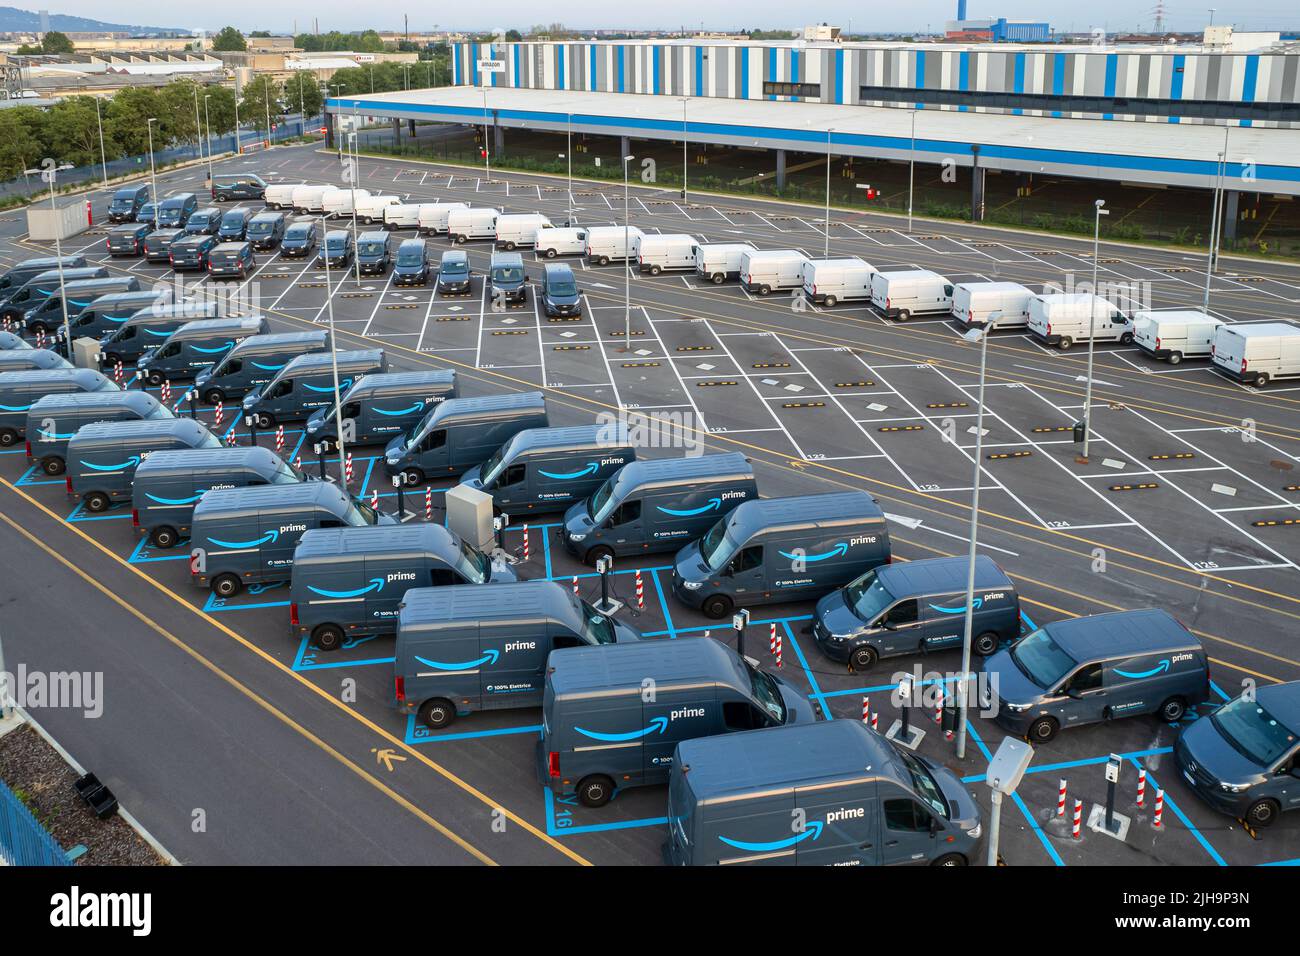 Vue de dessus des camionnettes de livraison électrique Amazon Prime, garées au centre logistique d'Amazon. Turin, Italie - juillet 2022 Banque D'Images